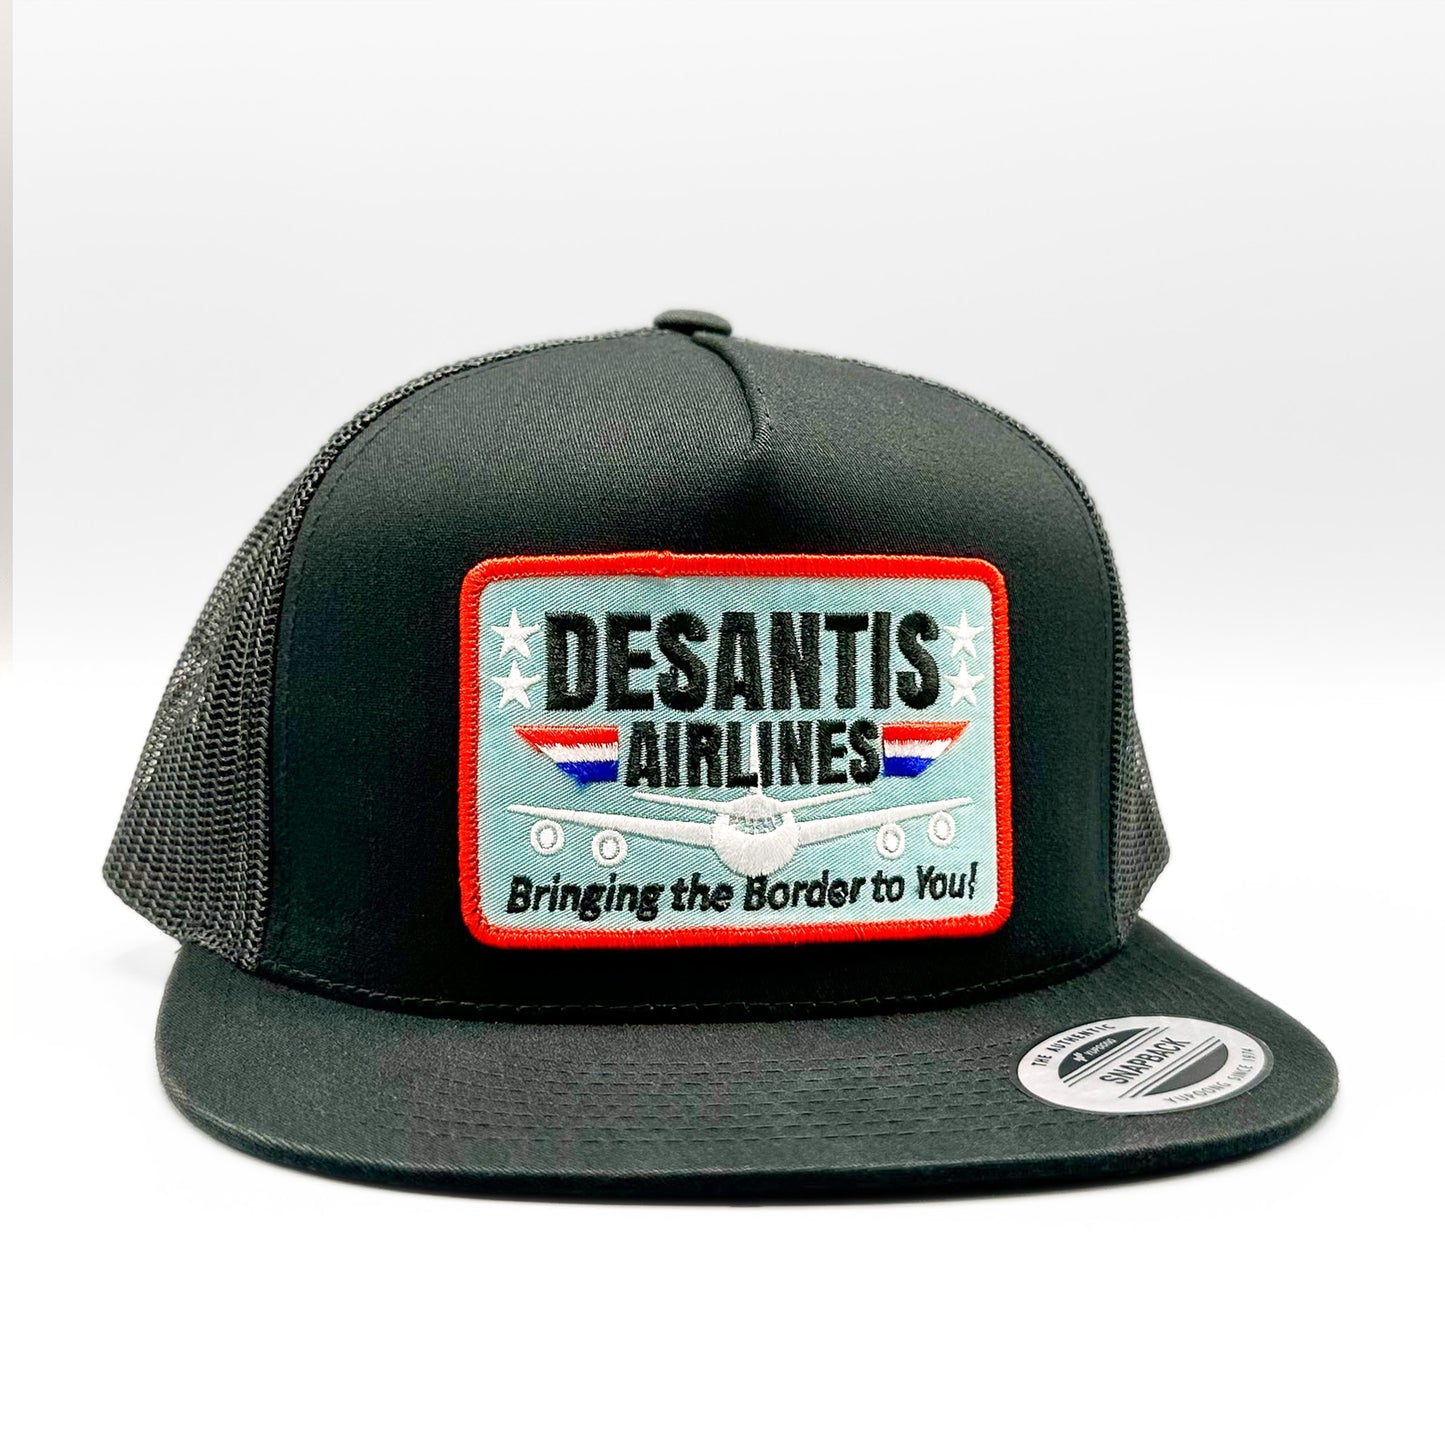 Ron DeSantis Airlines Republican Trucker Hat